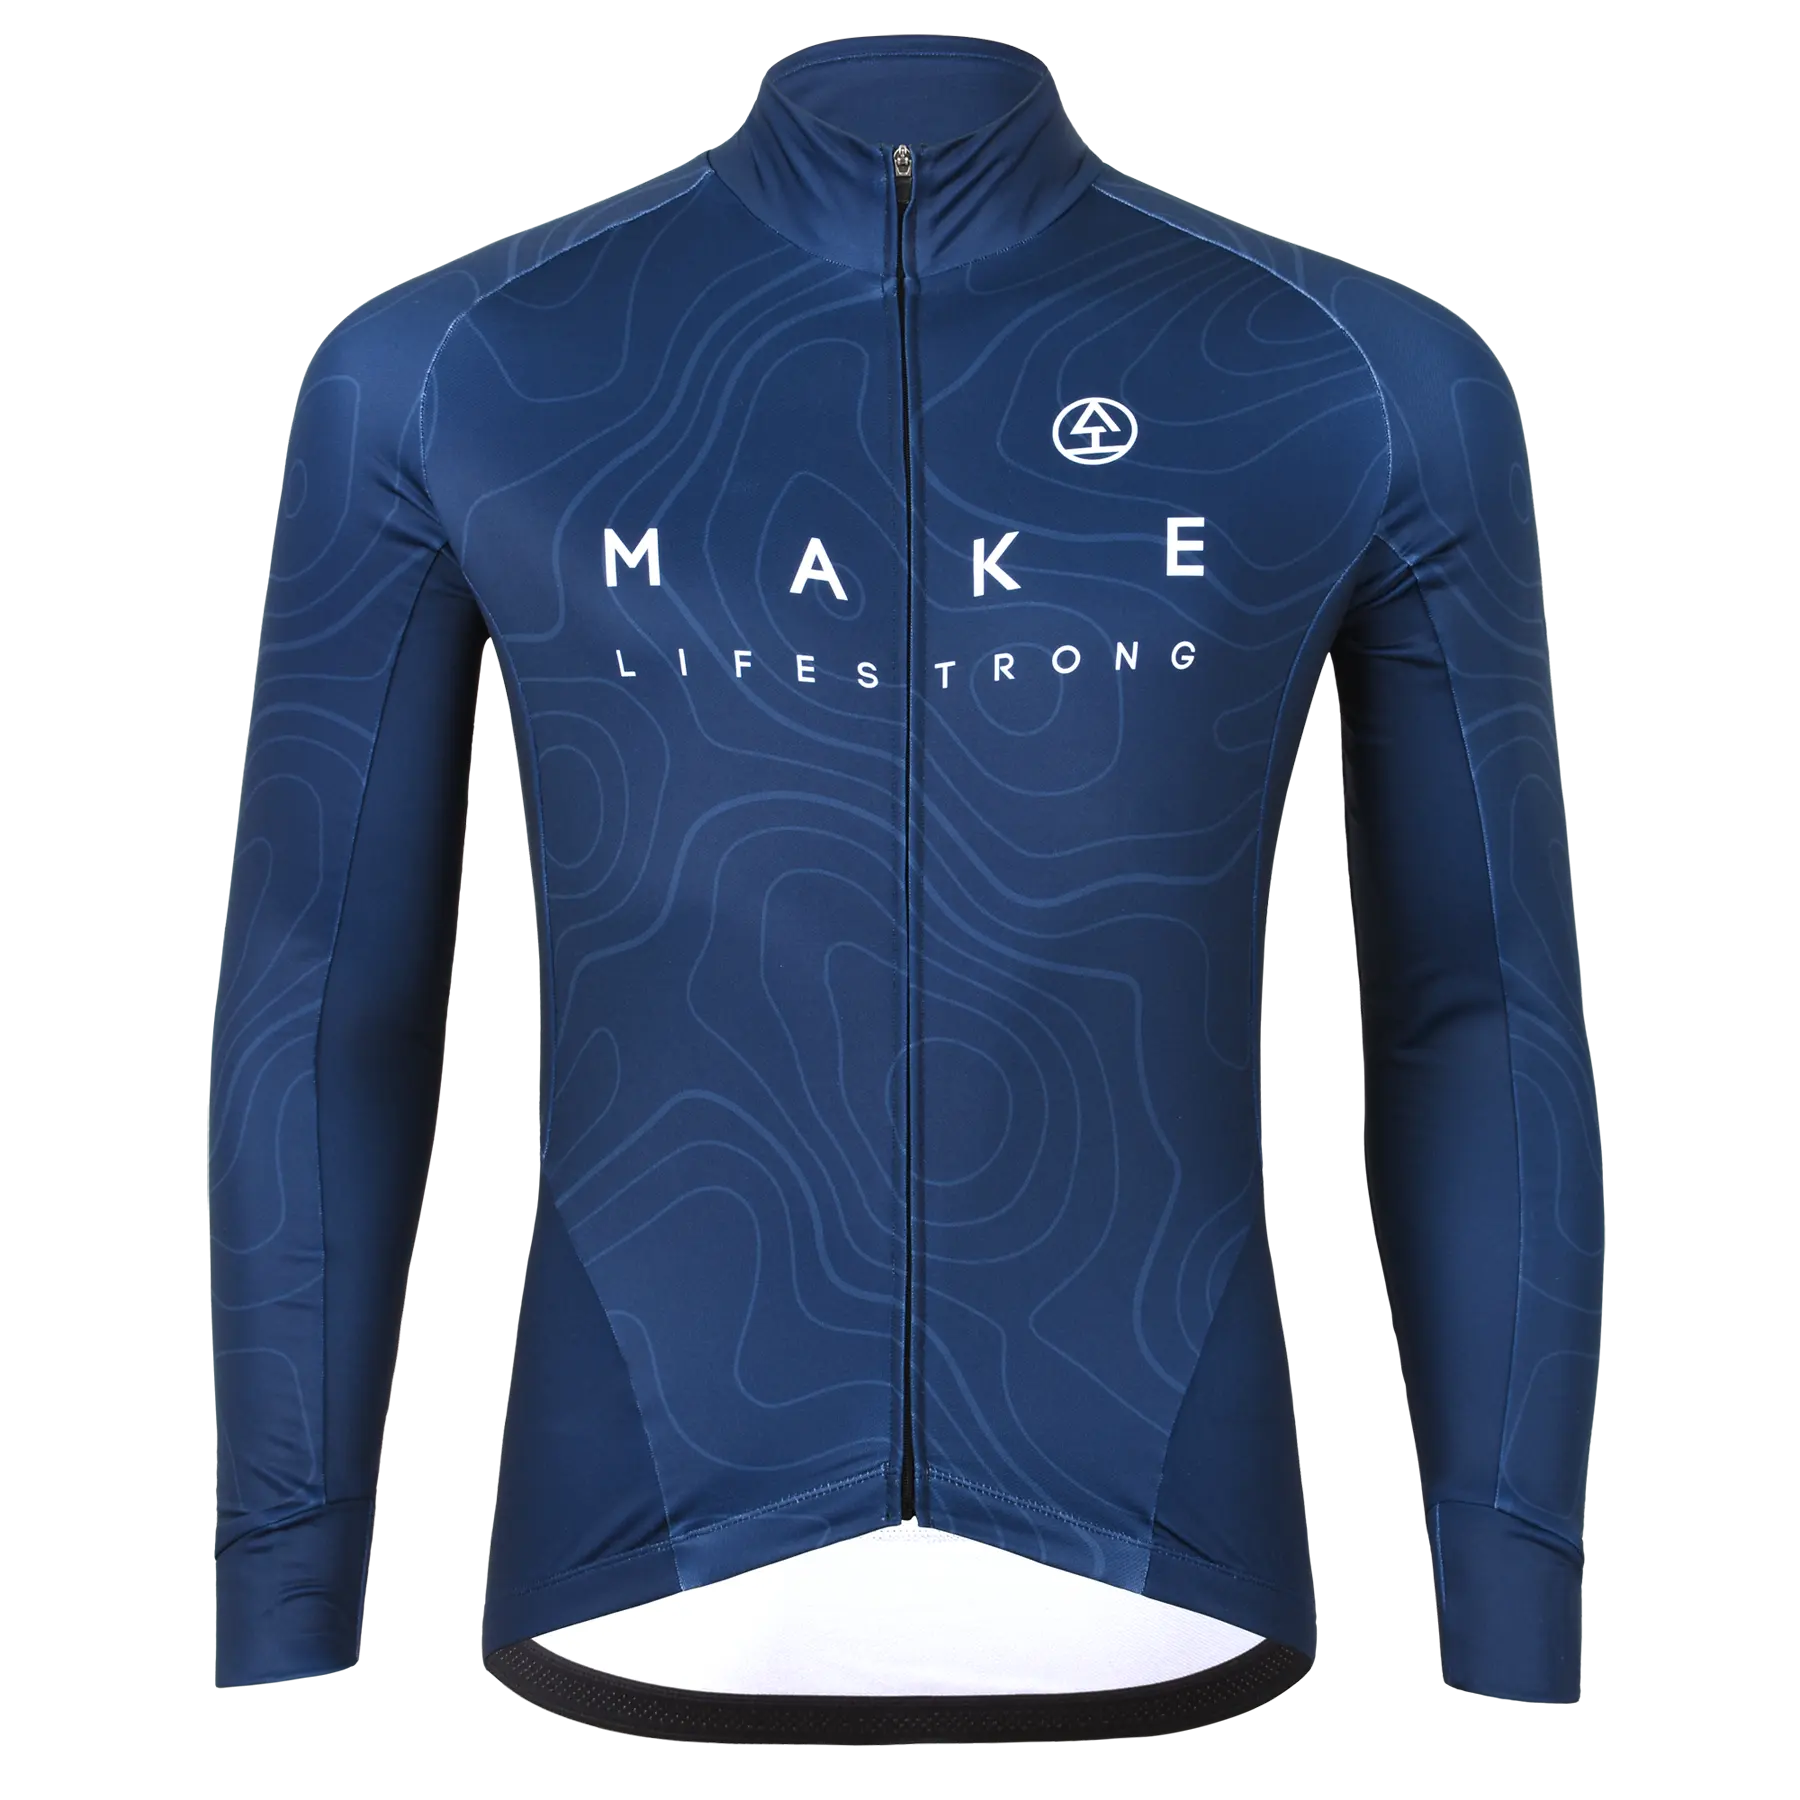 Tarstone camisa térmica personalizada de inverno, camisa de lã manga comprida para ciclismo, bicicleta, inverno